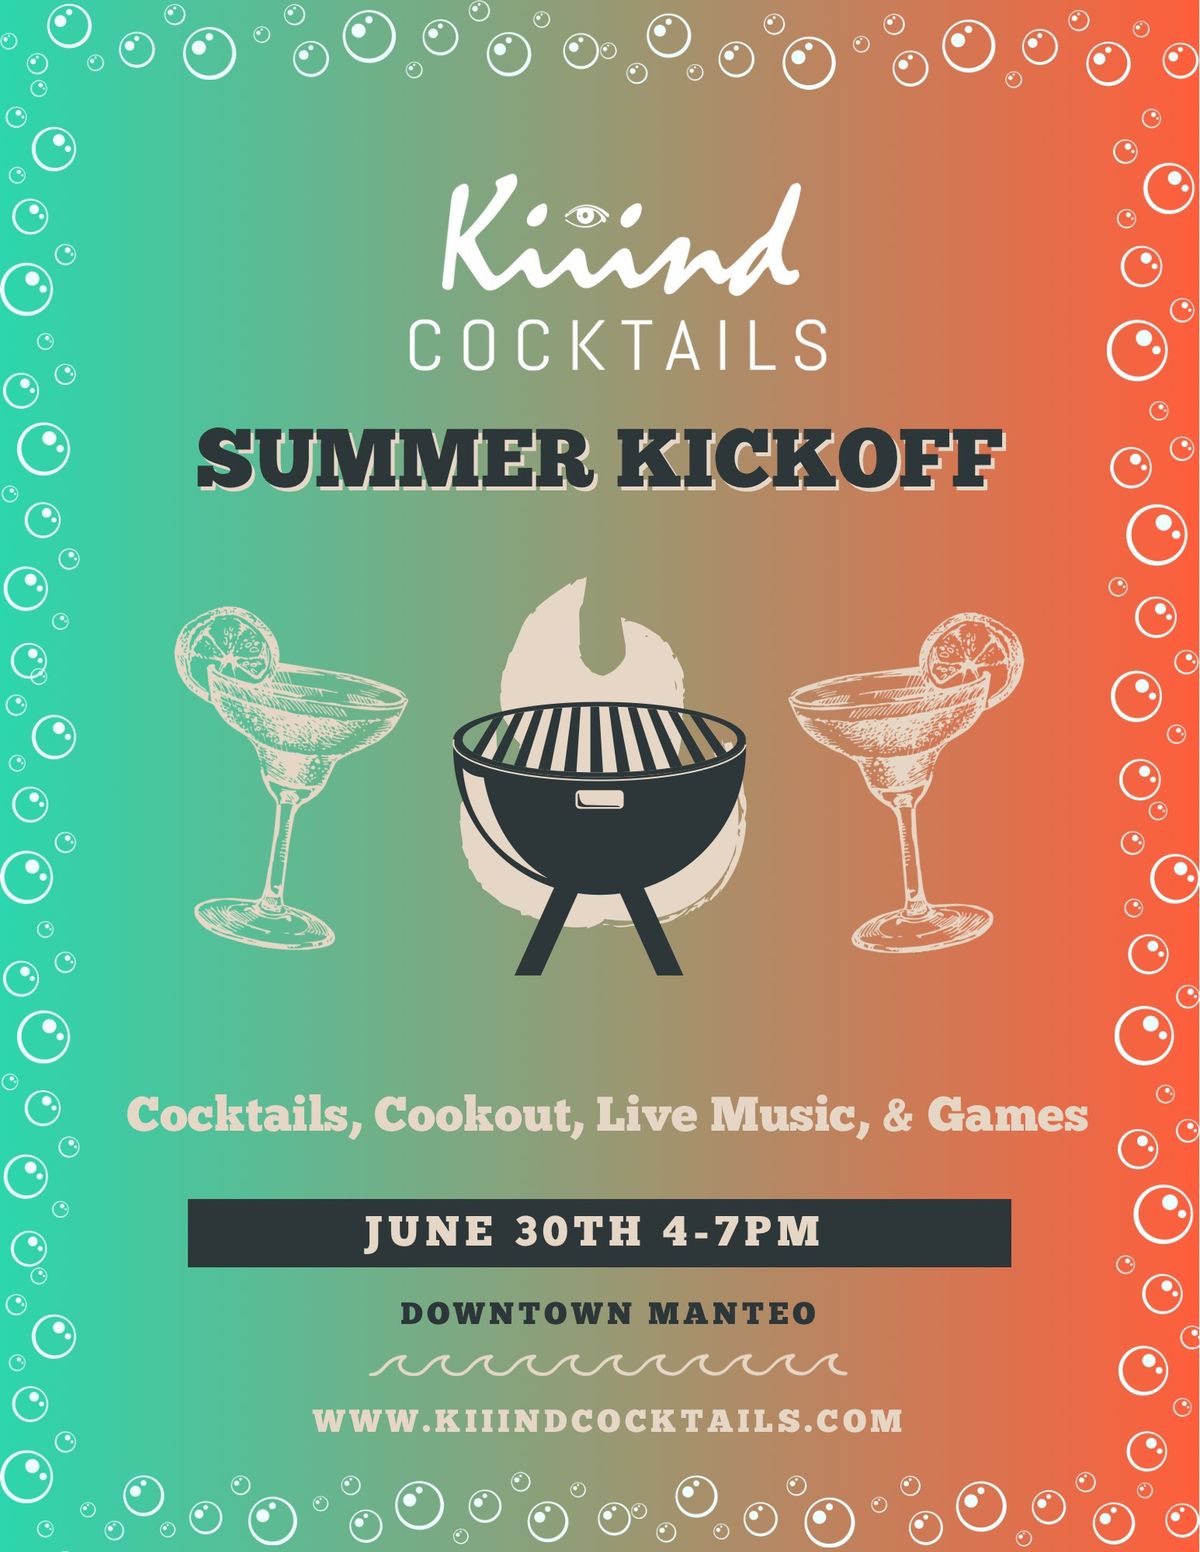 Kiiind Cocktails Summer Kickoff!